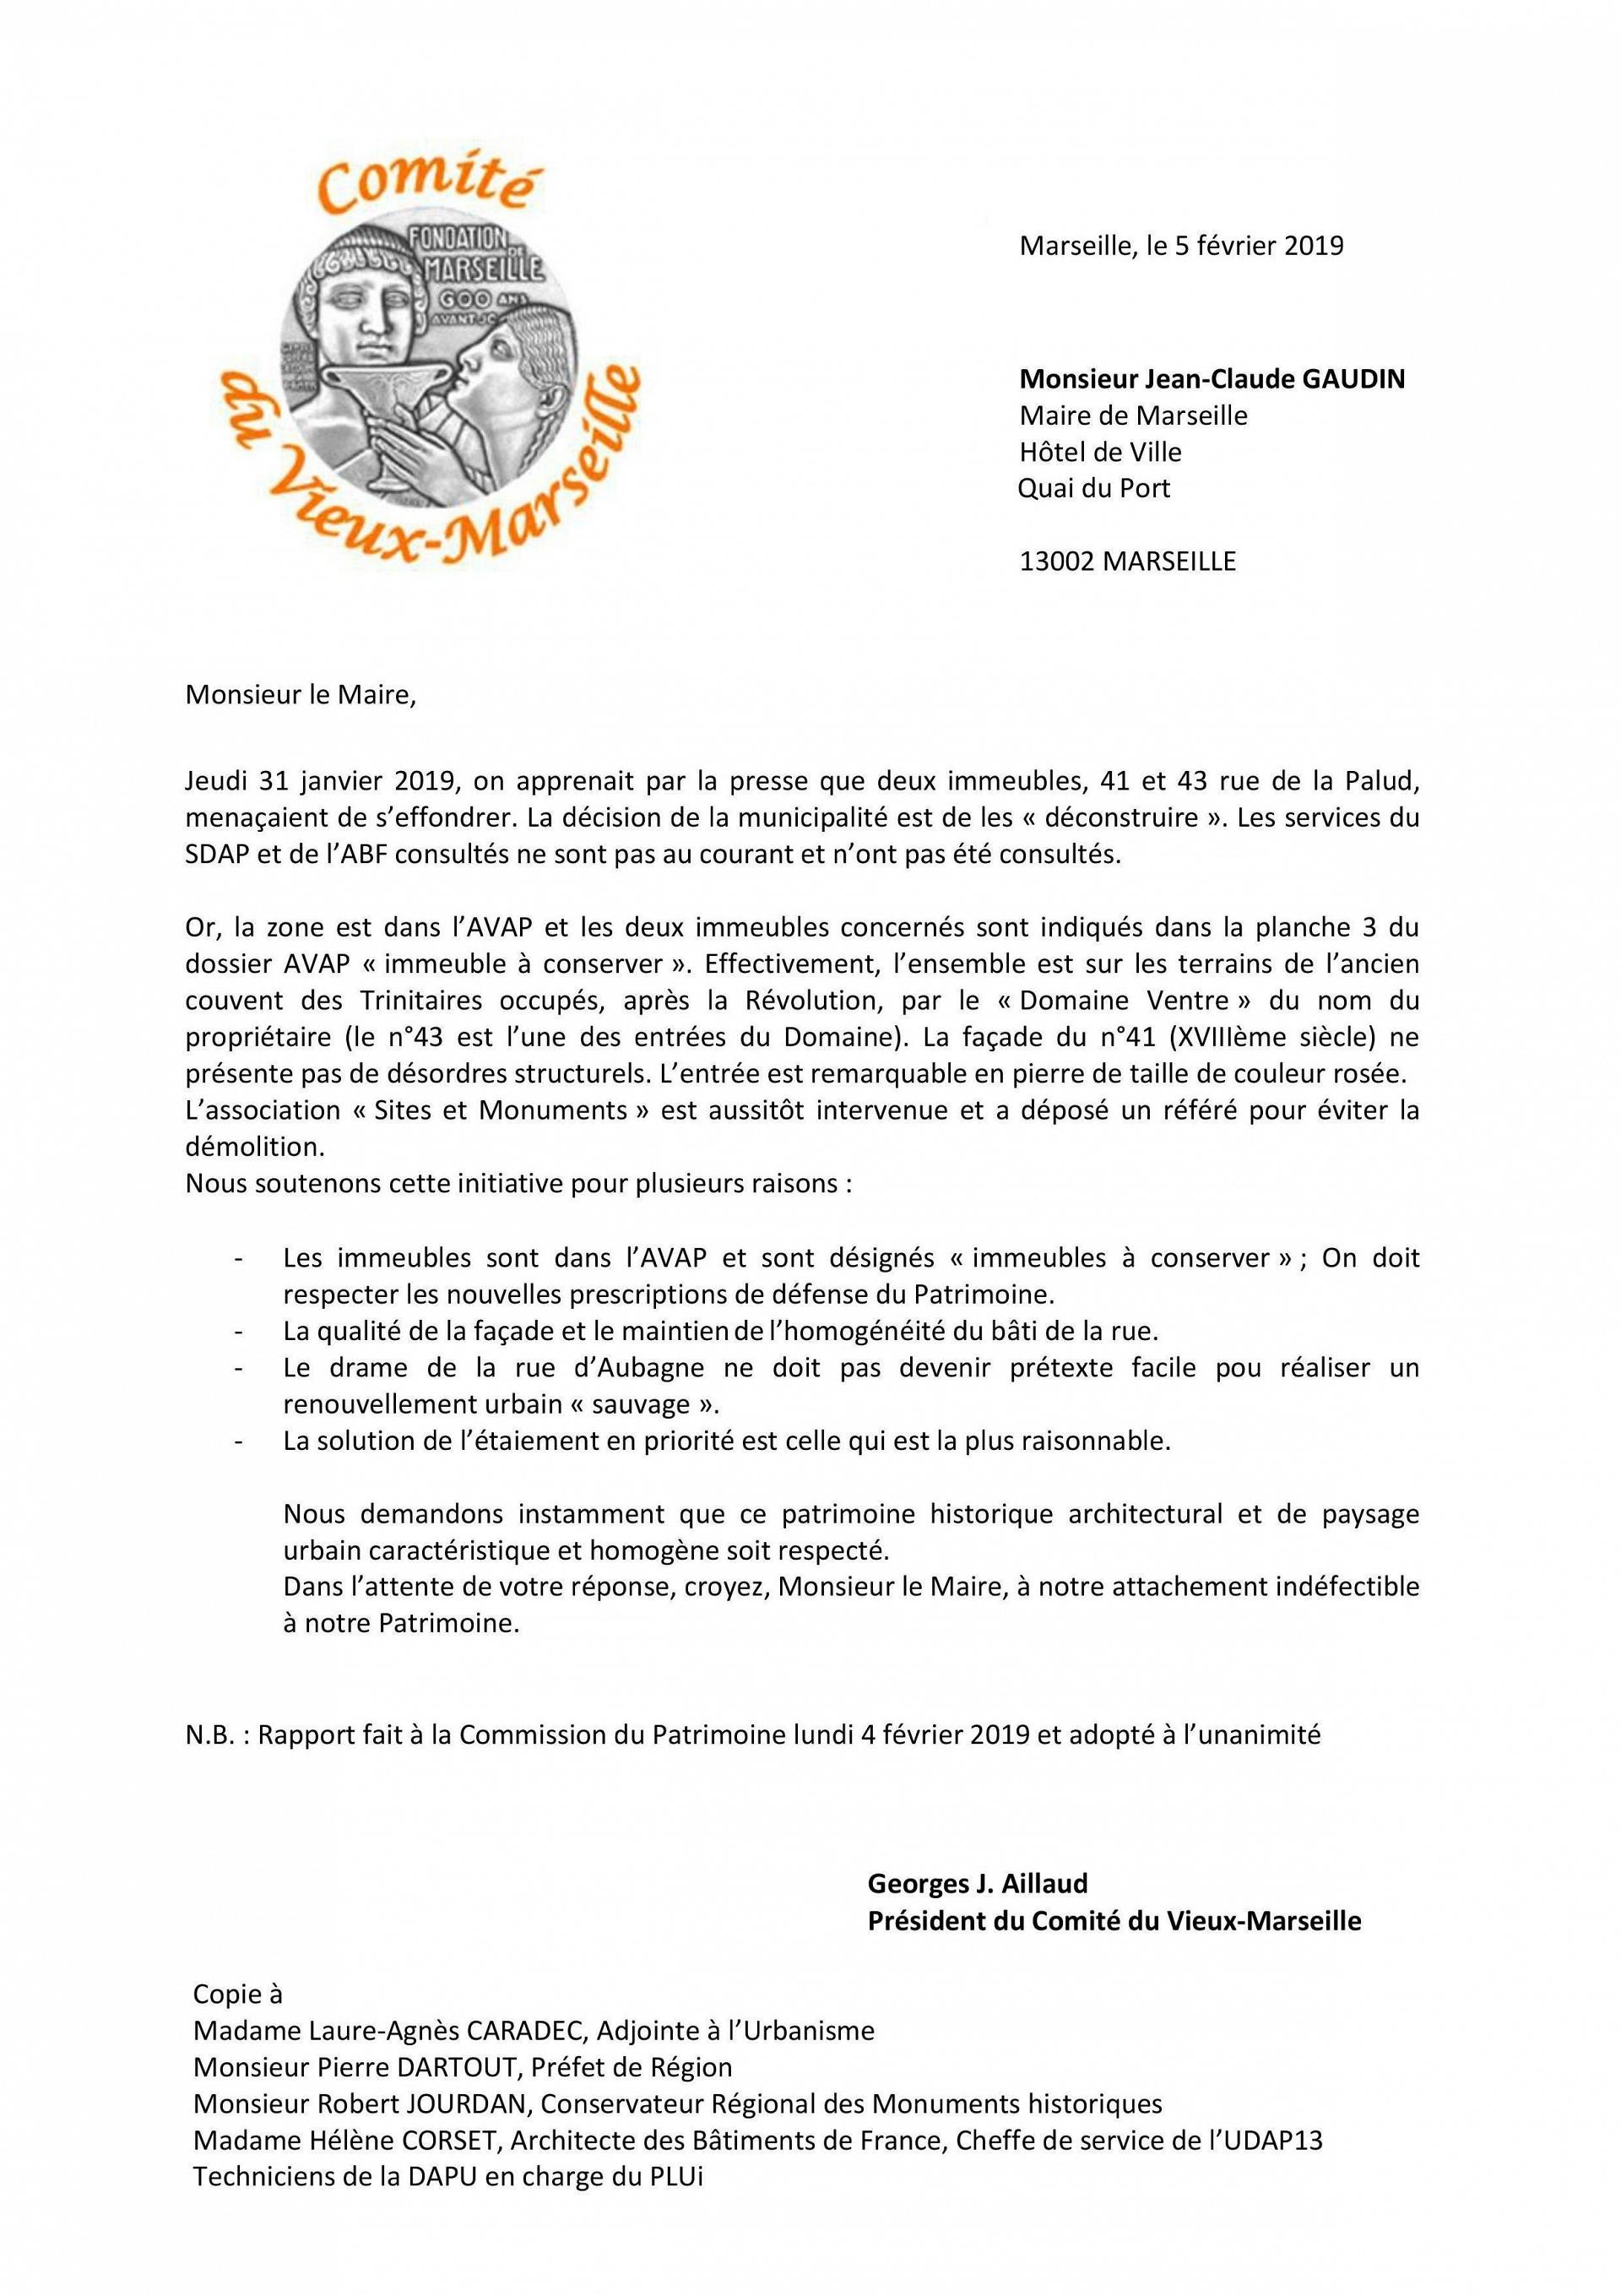 Lettre du Comité du Vieux Marseille à Jean-Claude Gaudin du 5 février 2019